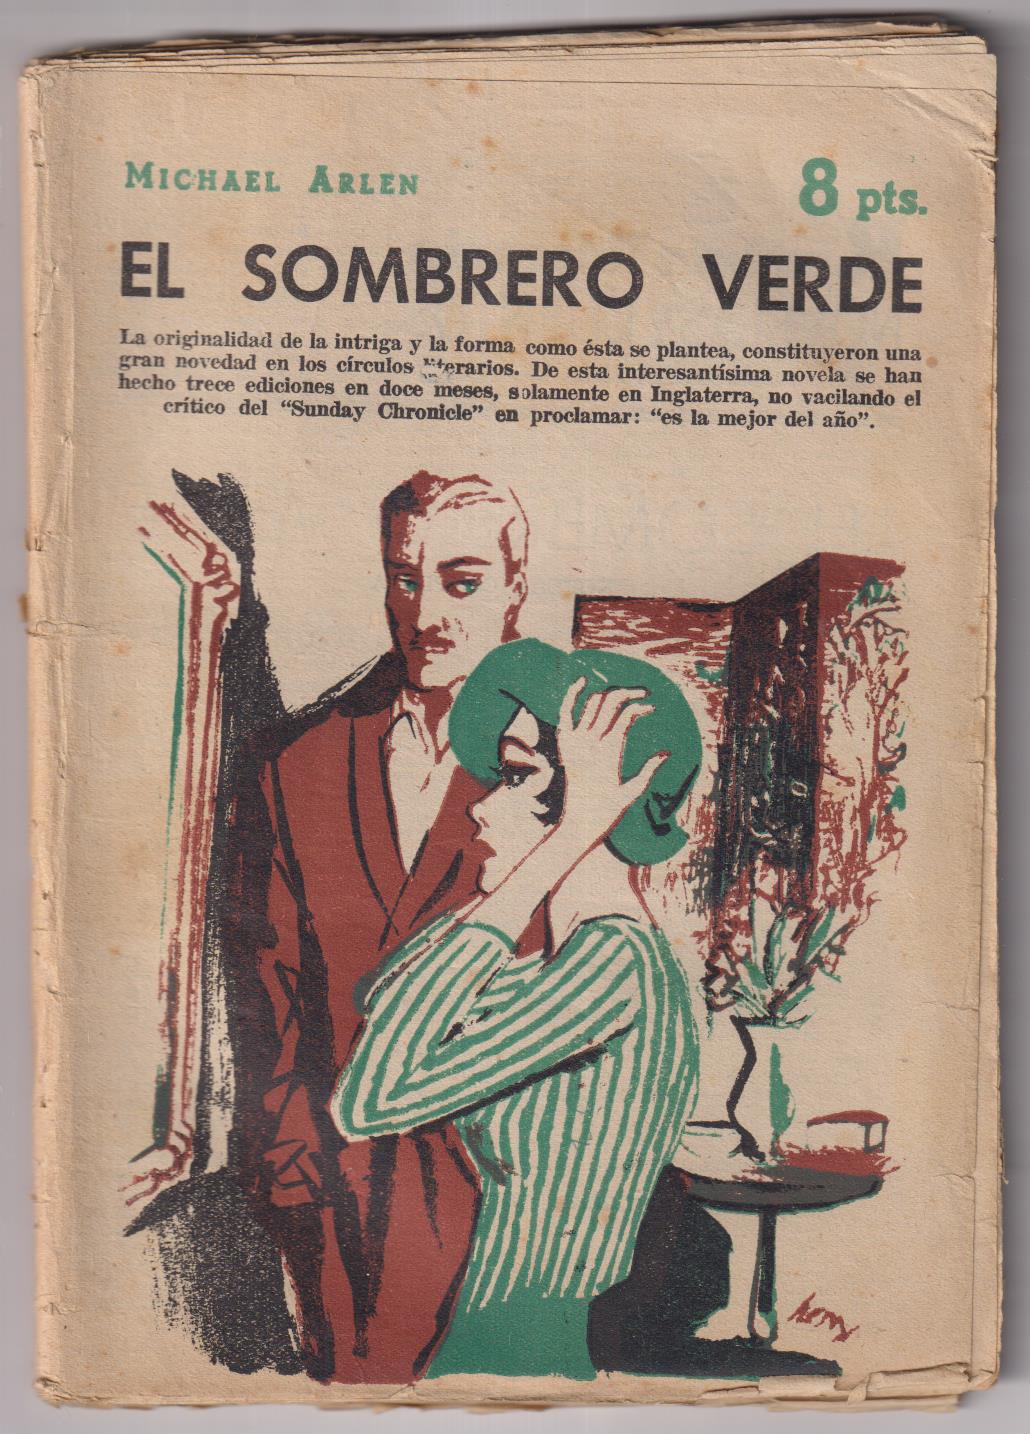 Revista Literaria Novelas y Cuentos nº 1441. Michael Arlen. El sombrero verde. Año 1958